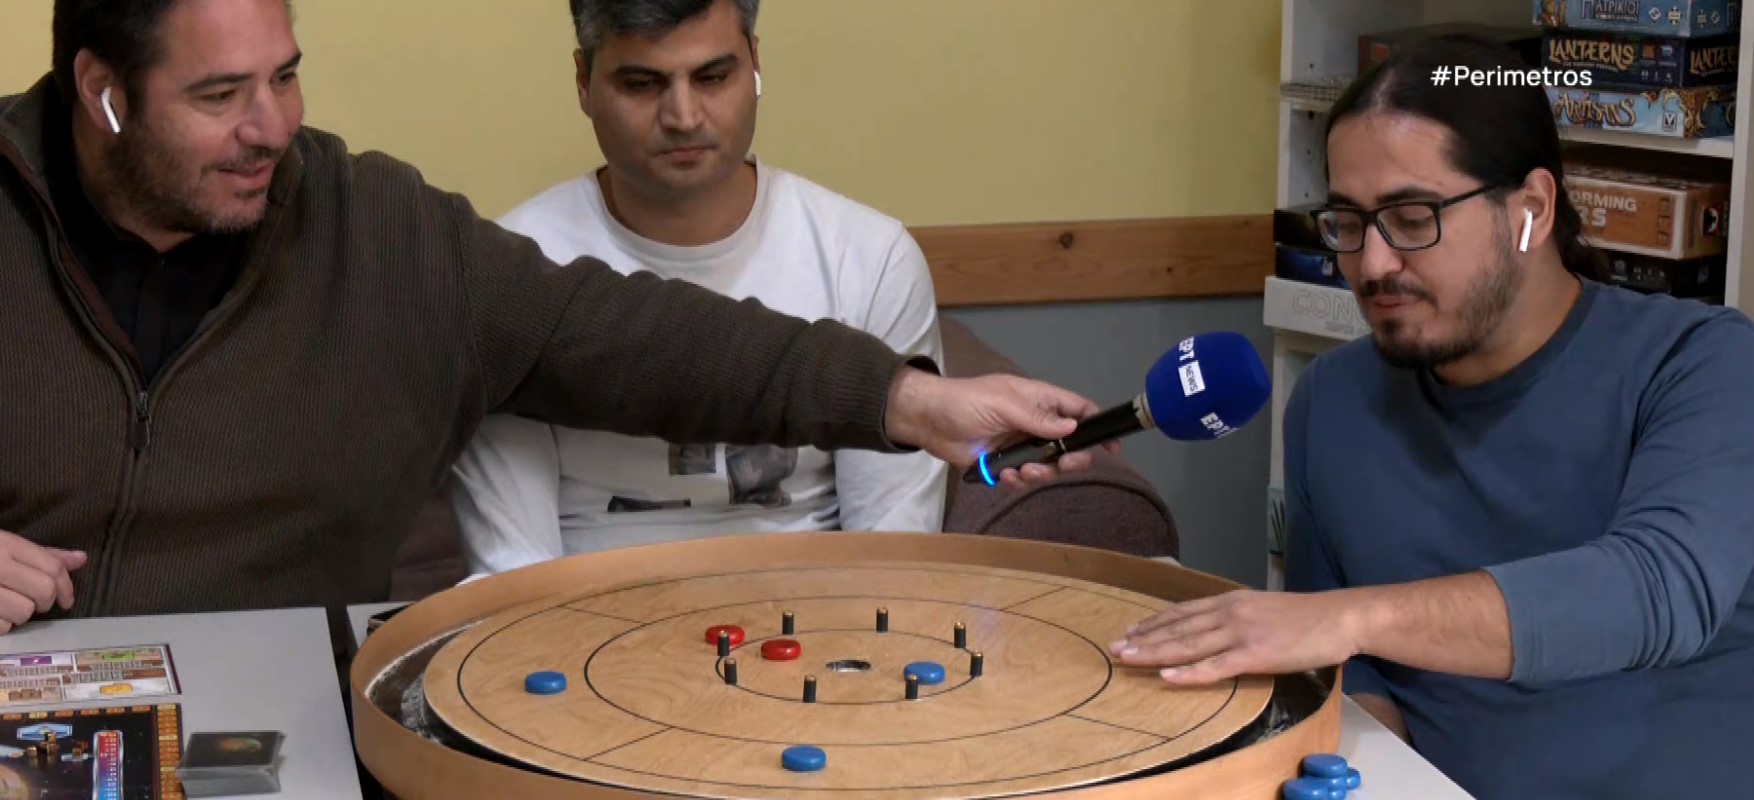 Καλαμάτα: Οι φίλοι των επιτραπέζιων παιχνιδιών έκαναν σύλλογο